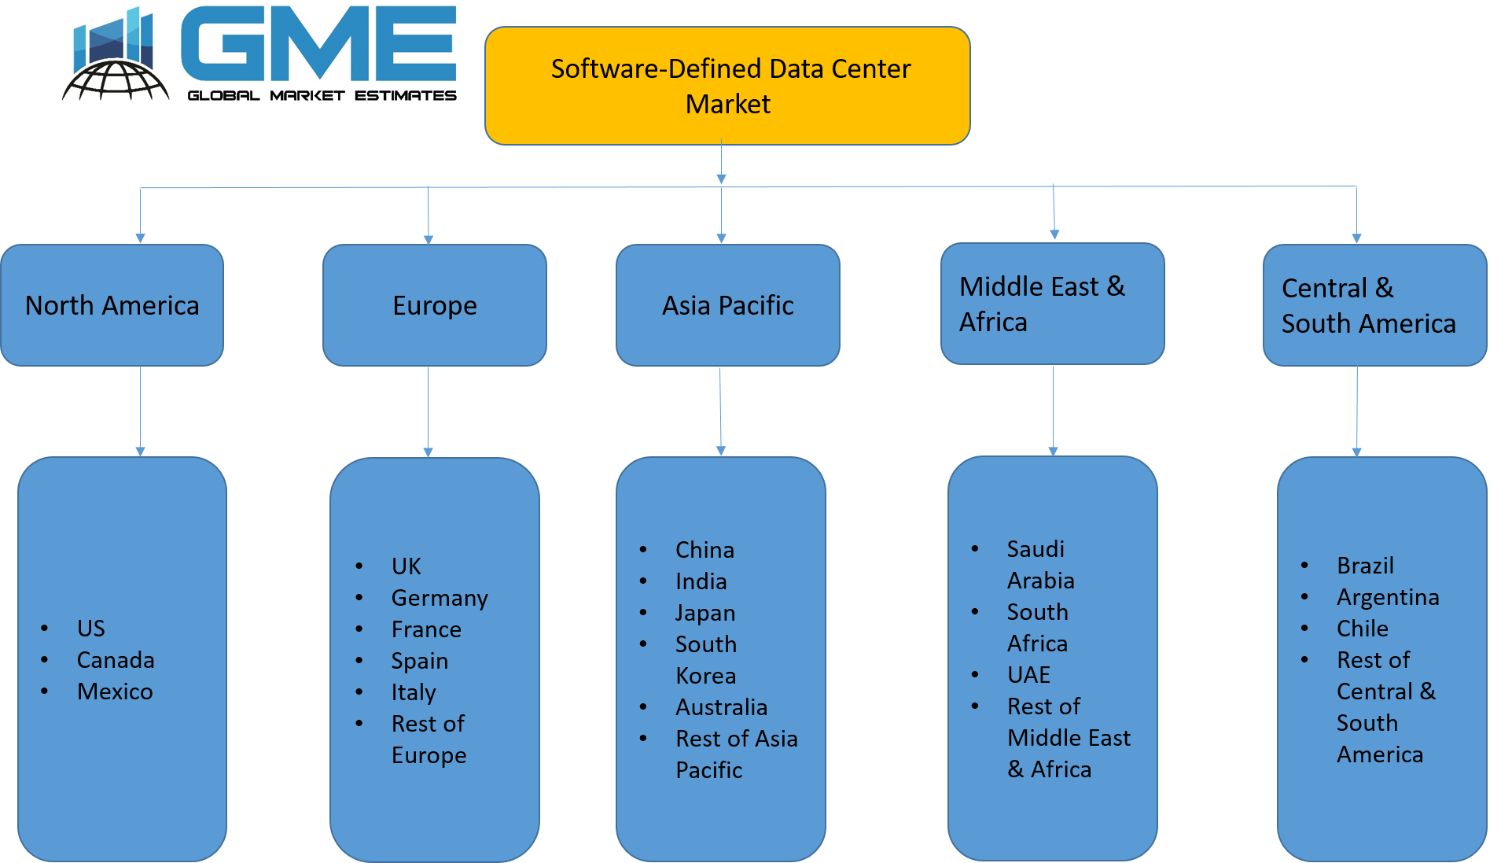 Software-Defined Data Center Market - Regional Analysis